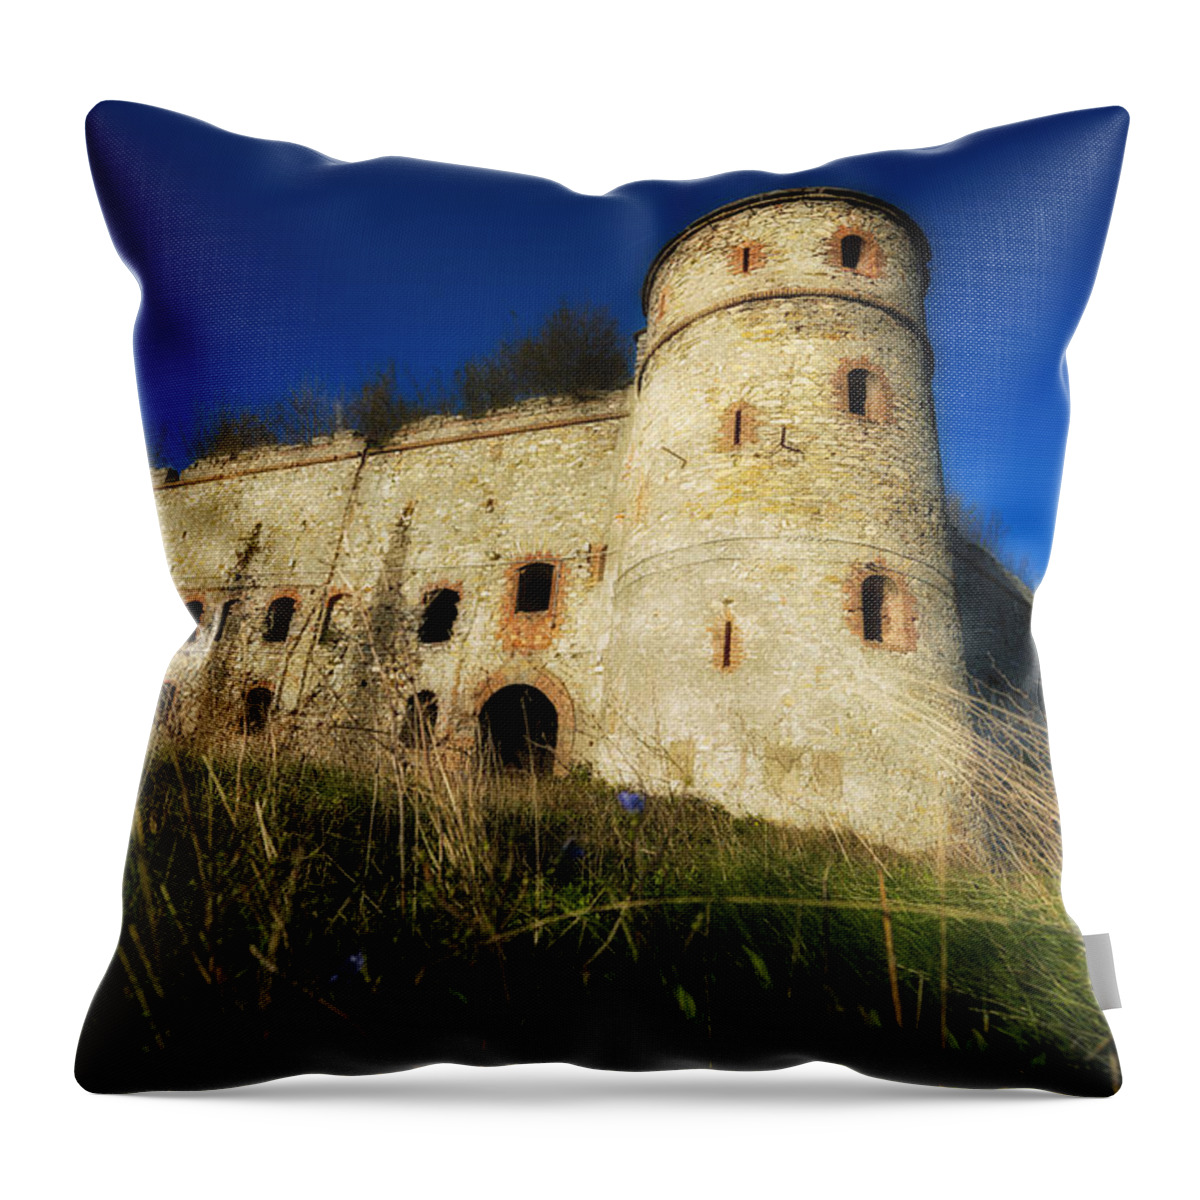 Genoa Forts Throw Pillow featuring the photograph THE FORTRESS - LA FORTEZZA del FORTE SPERONE DI GENOVA by Enrico Pelos